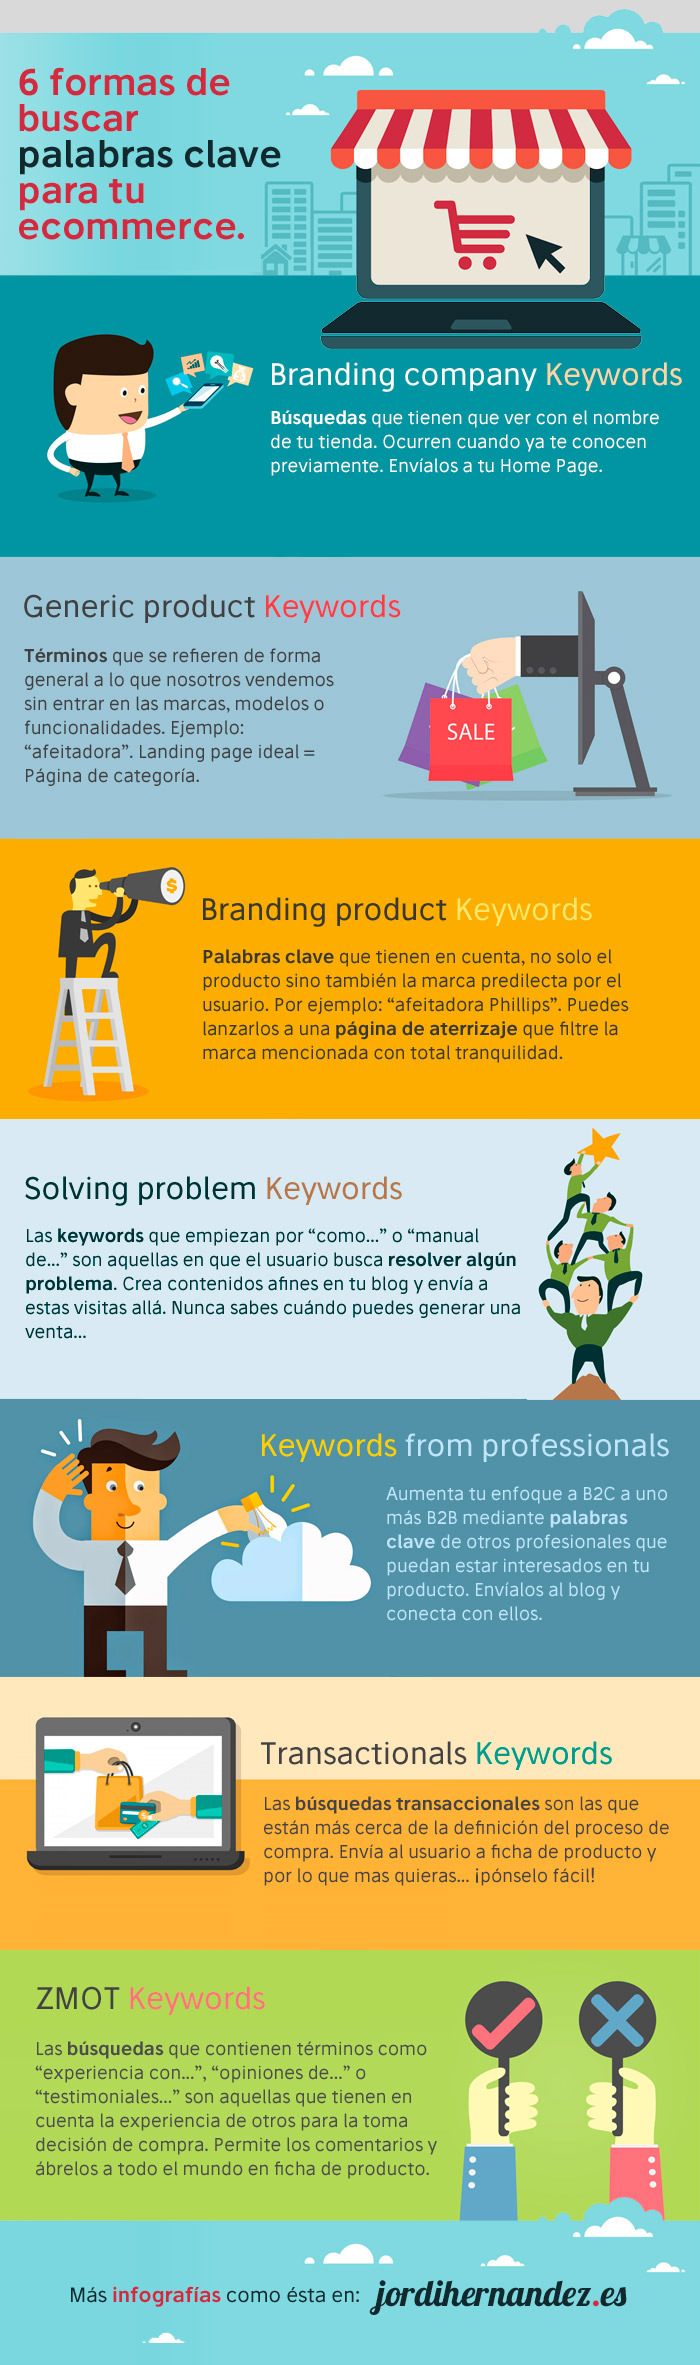 Infografia - 6 formas de buscar palabras clave para tu Tienda Online #infografia #seo #ecommerce - TICs y Formación